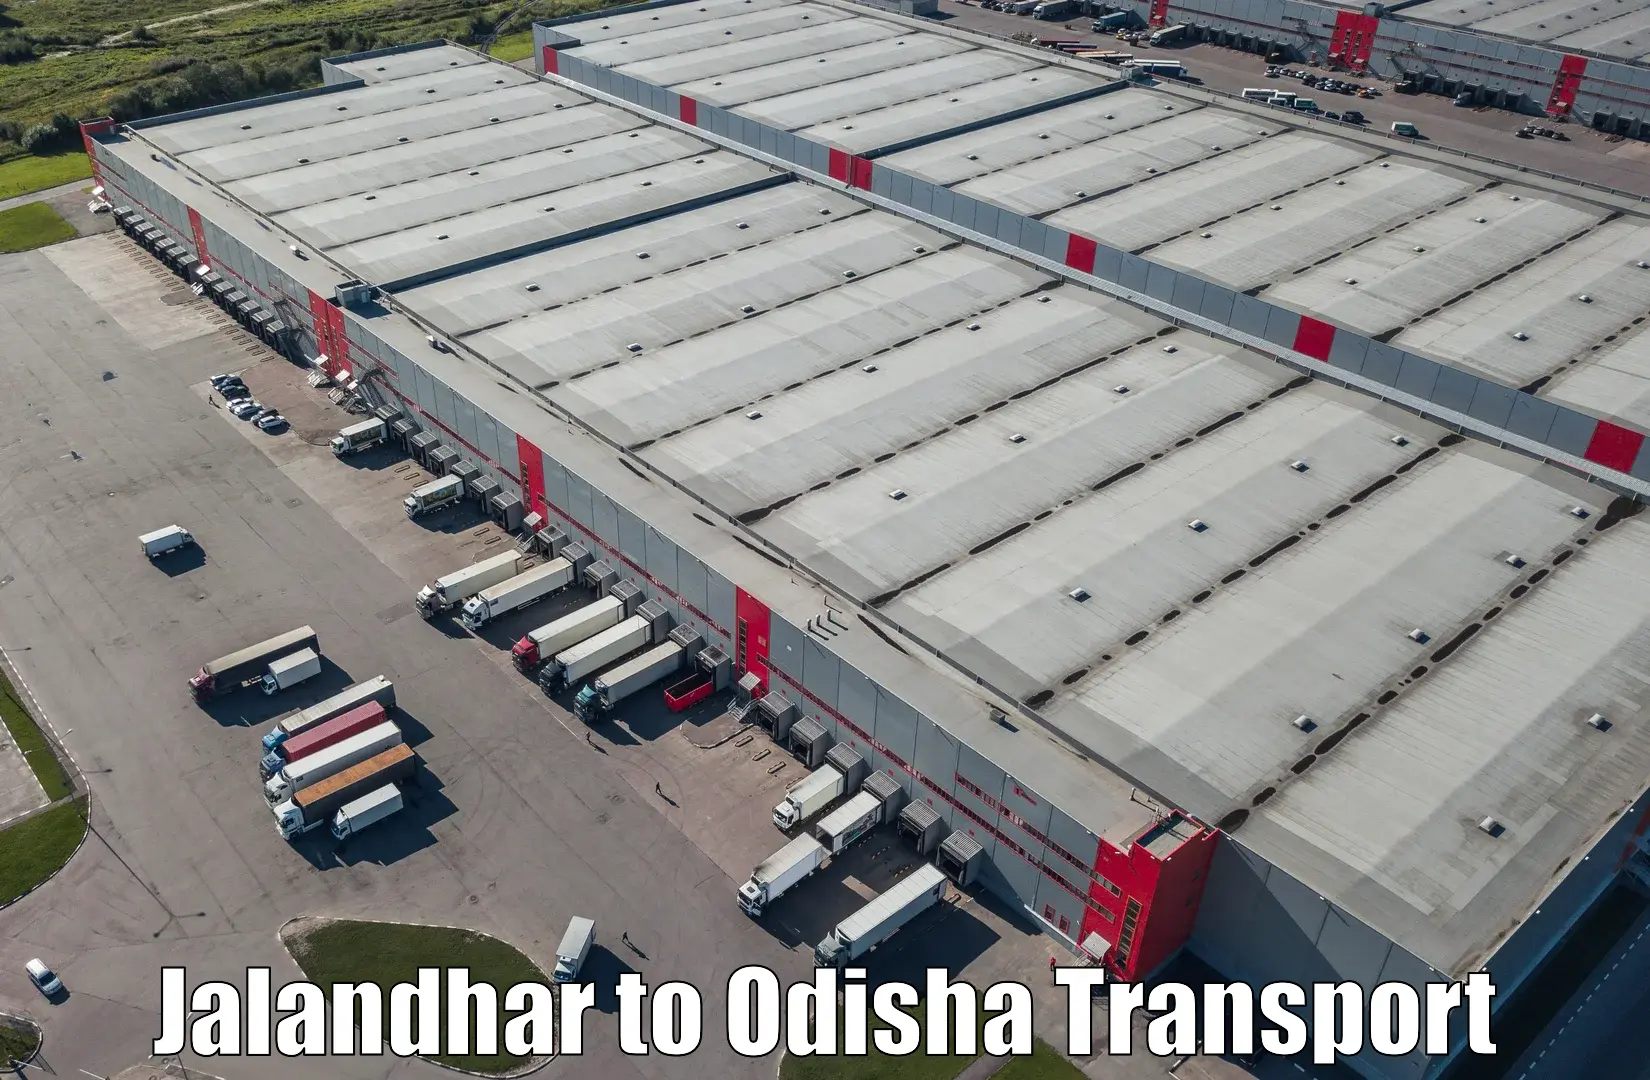 Express transport services Jalandhar to Pappadahandi